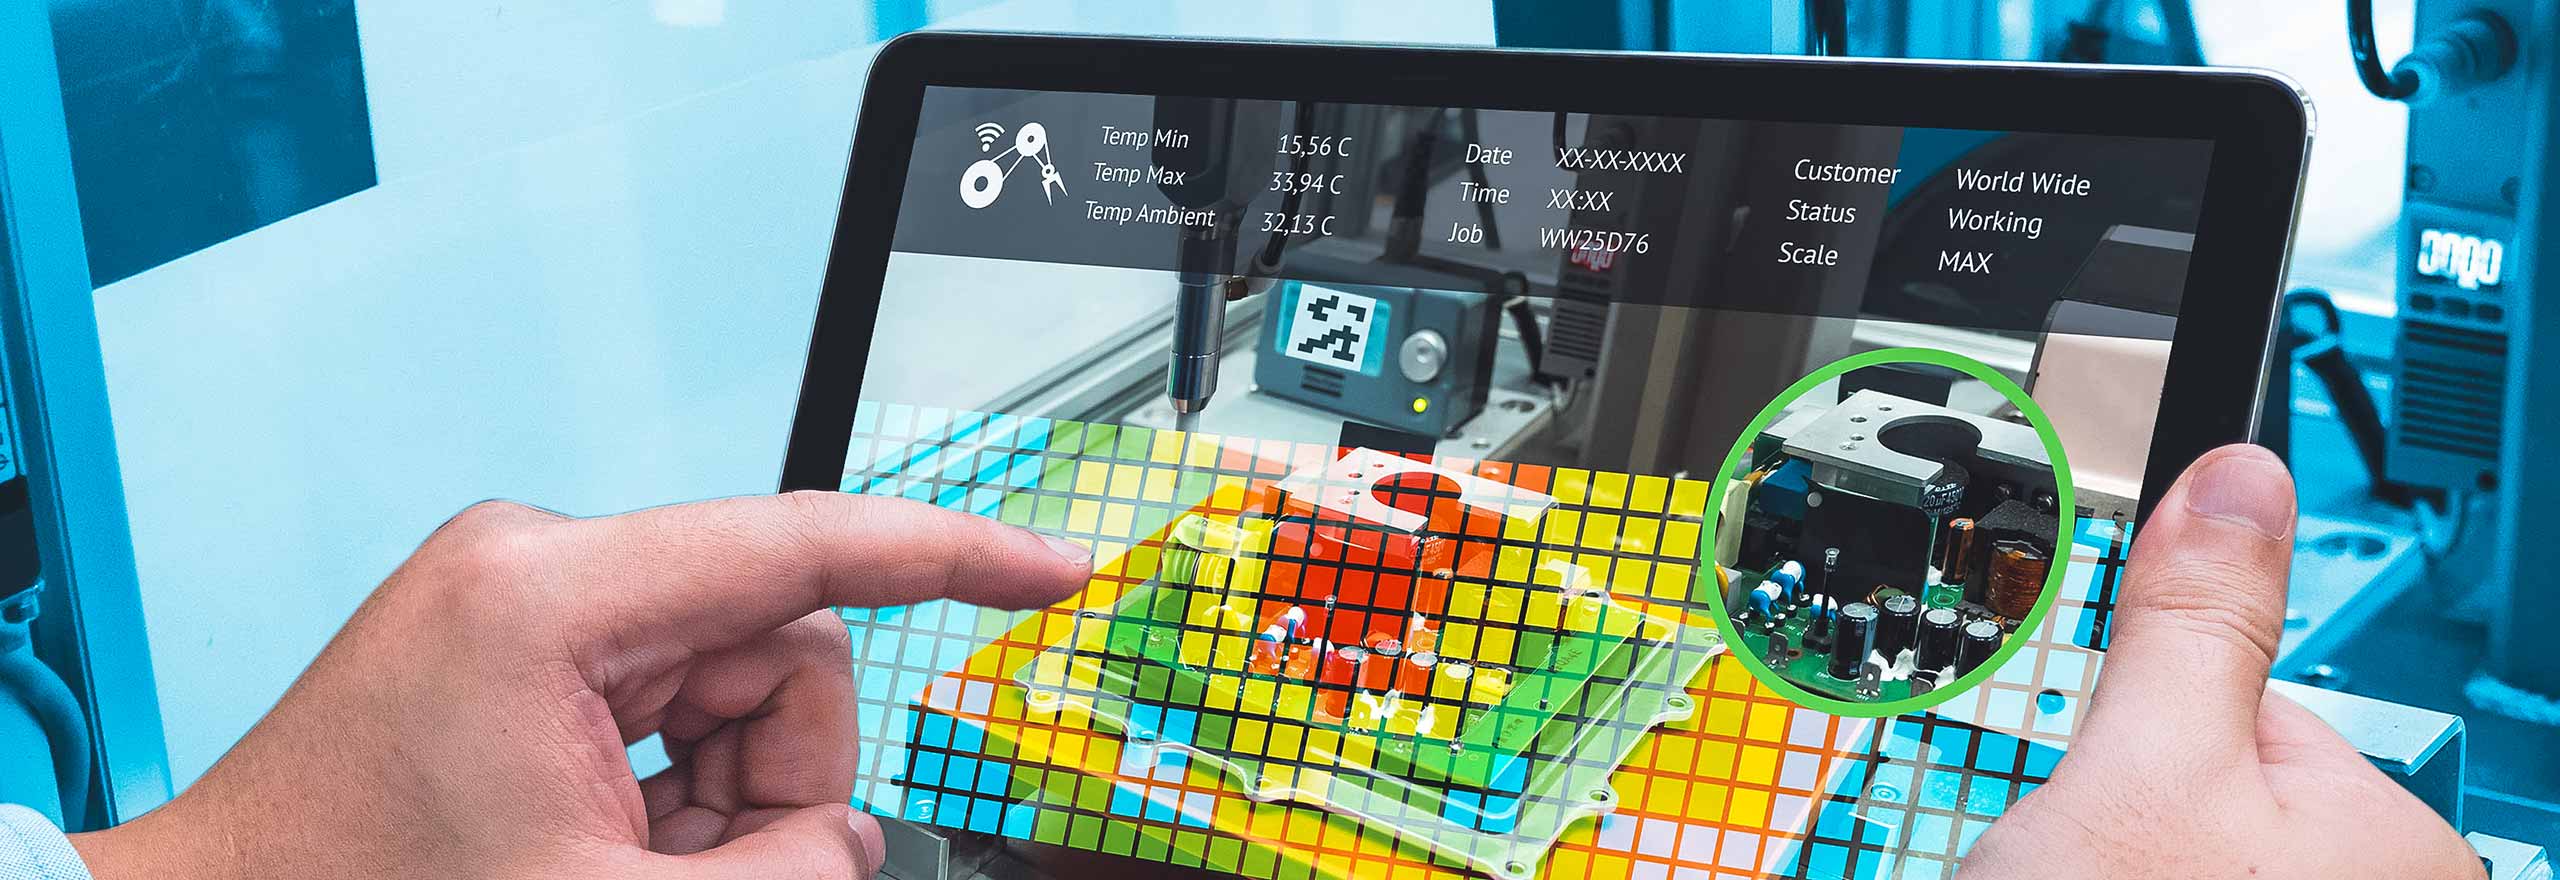 Bild, das Personal einer Produktionsstätte mit einem Bild der erweiterten Realität auf einem Tablet zeigt